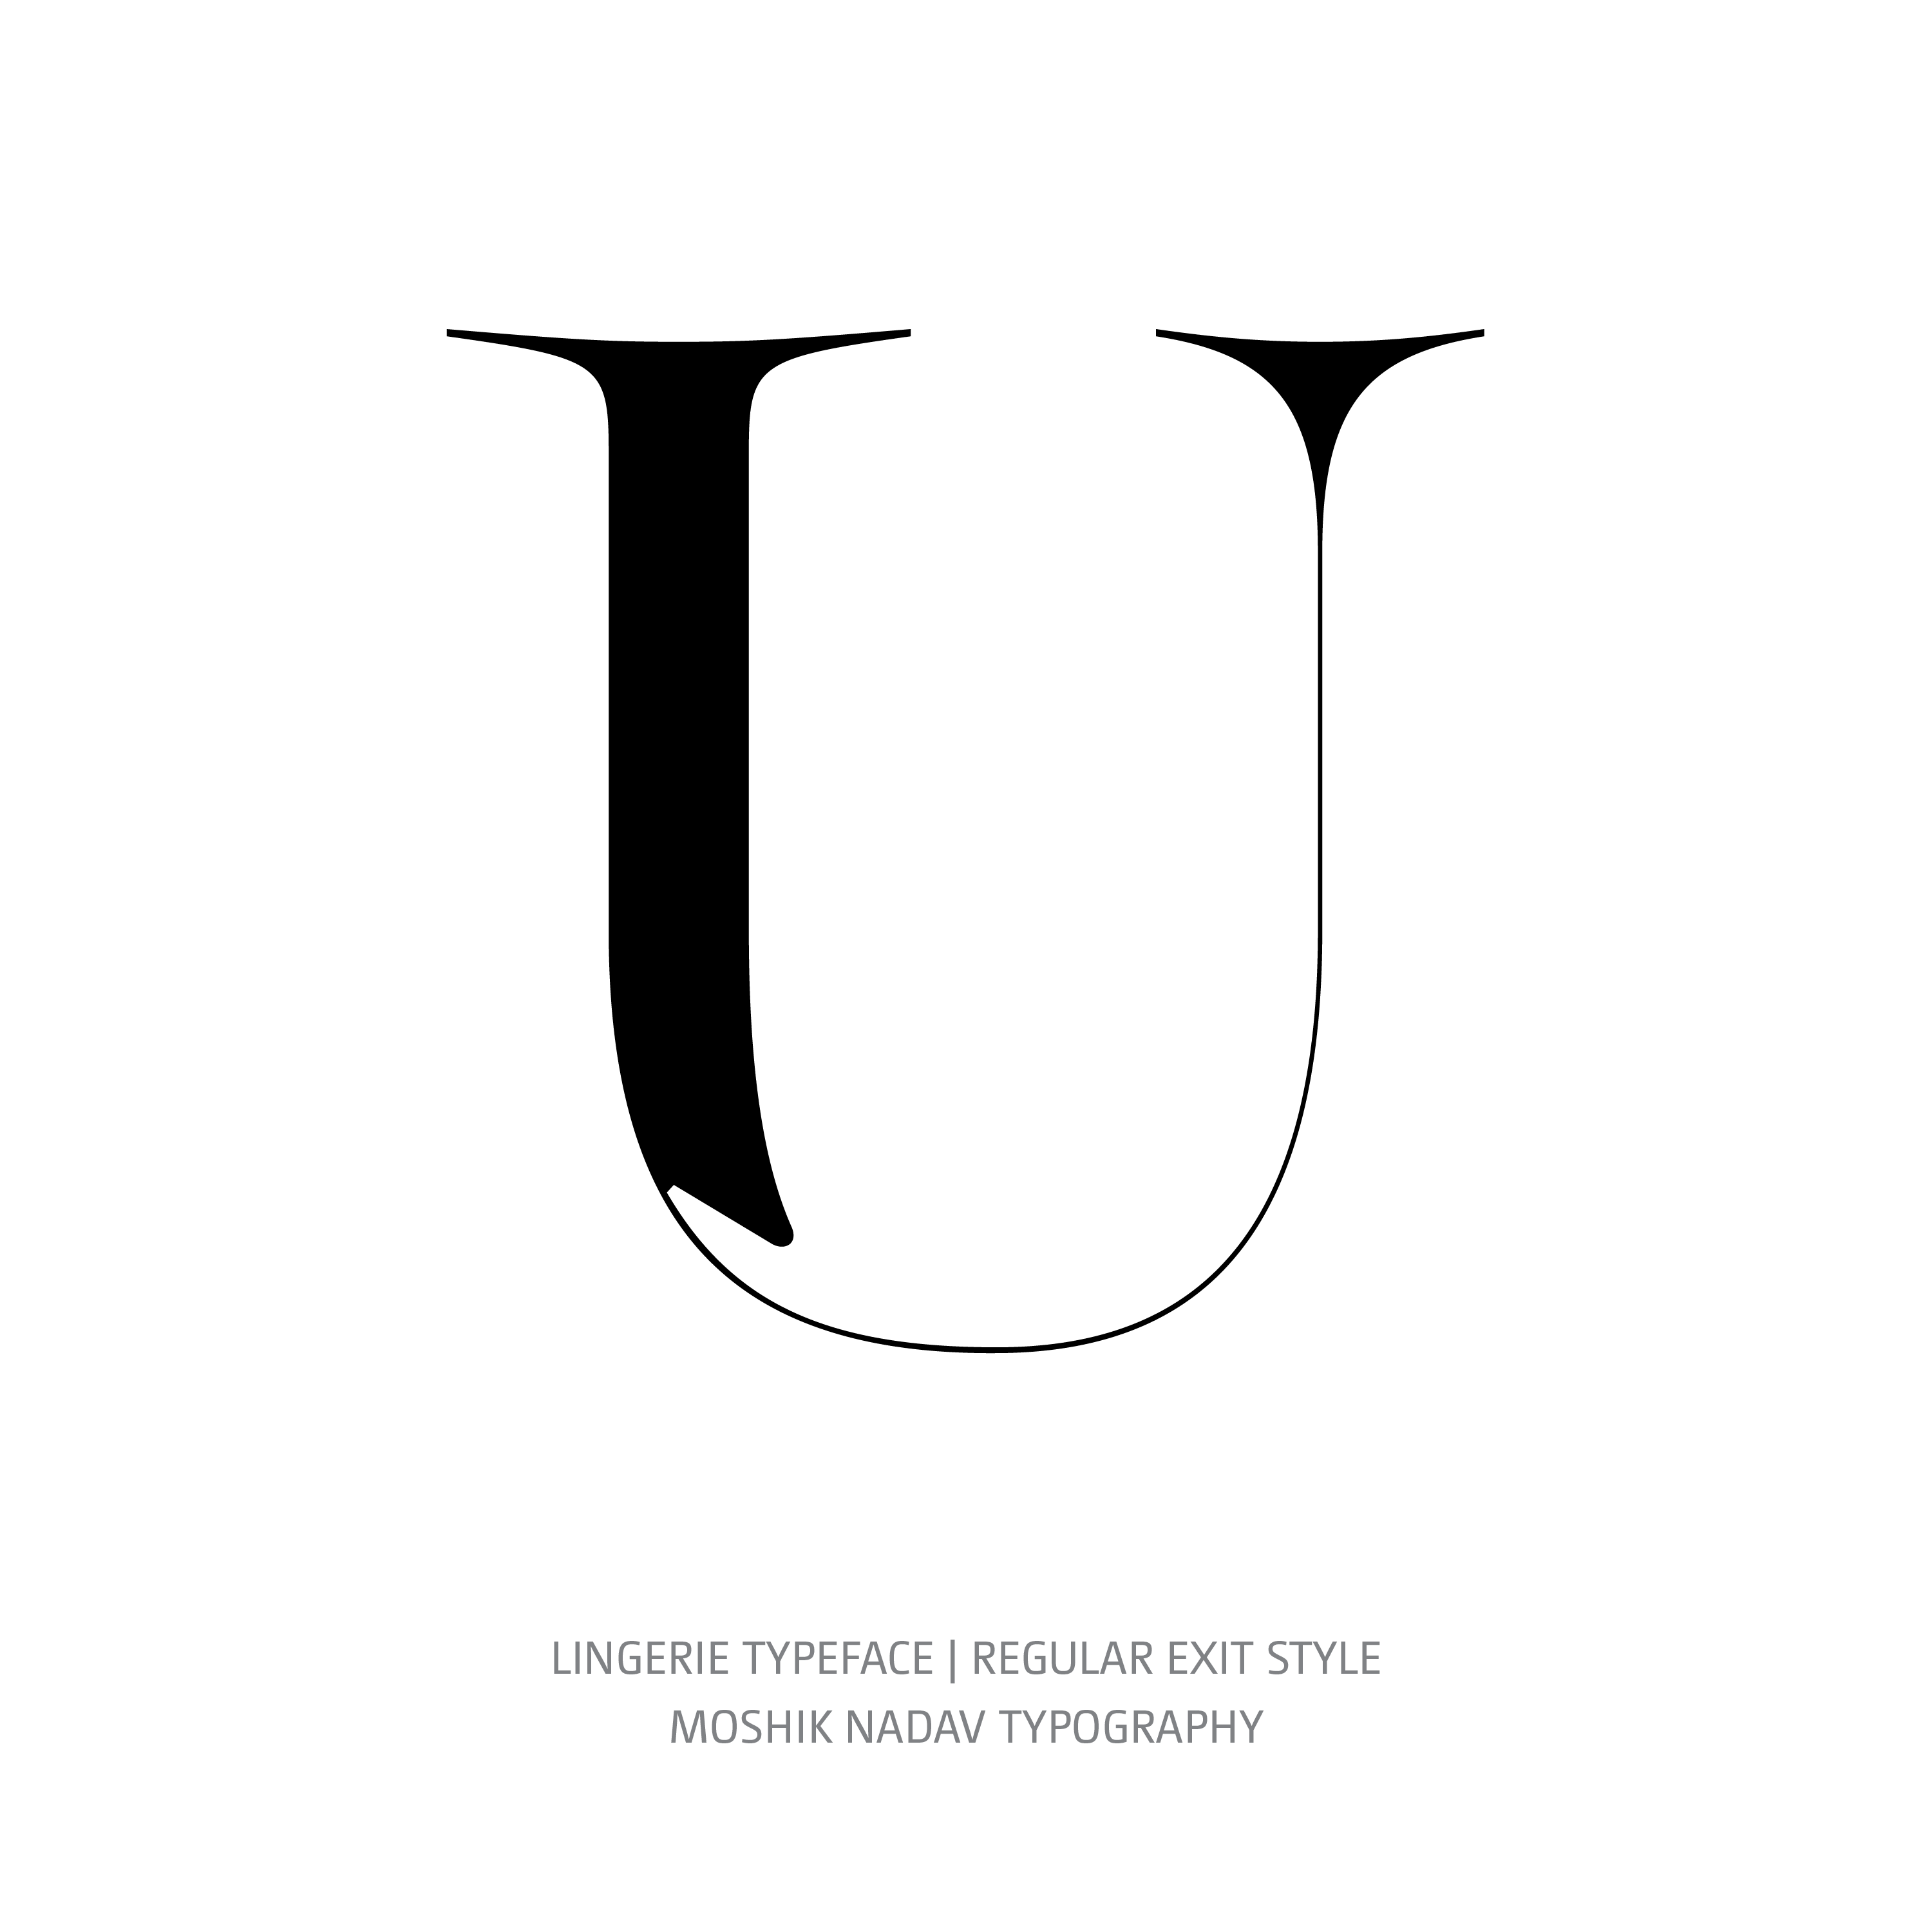 Lingerie Typeface Regular Exit U